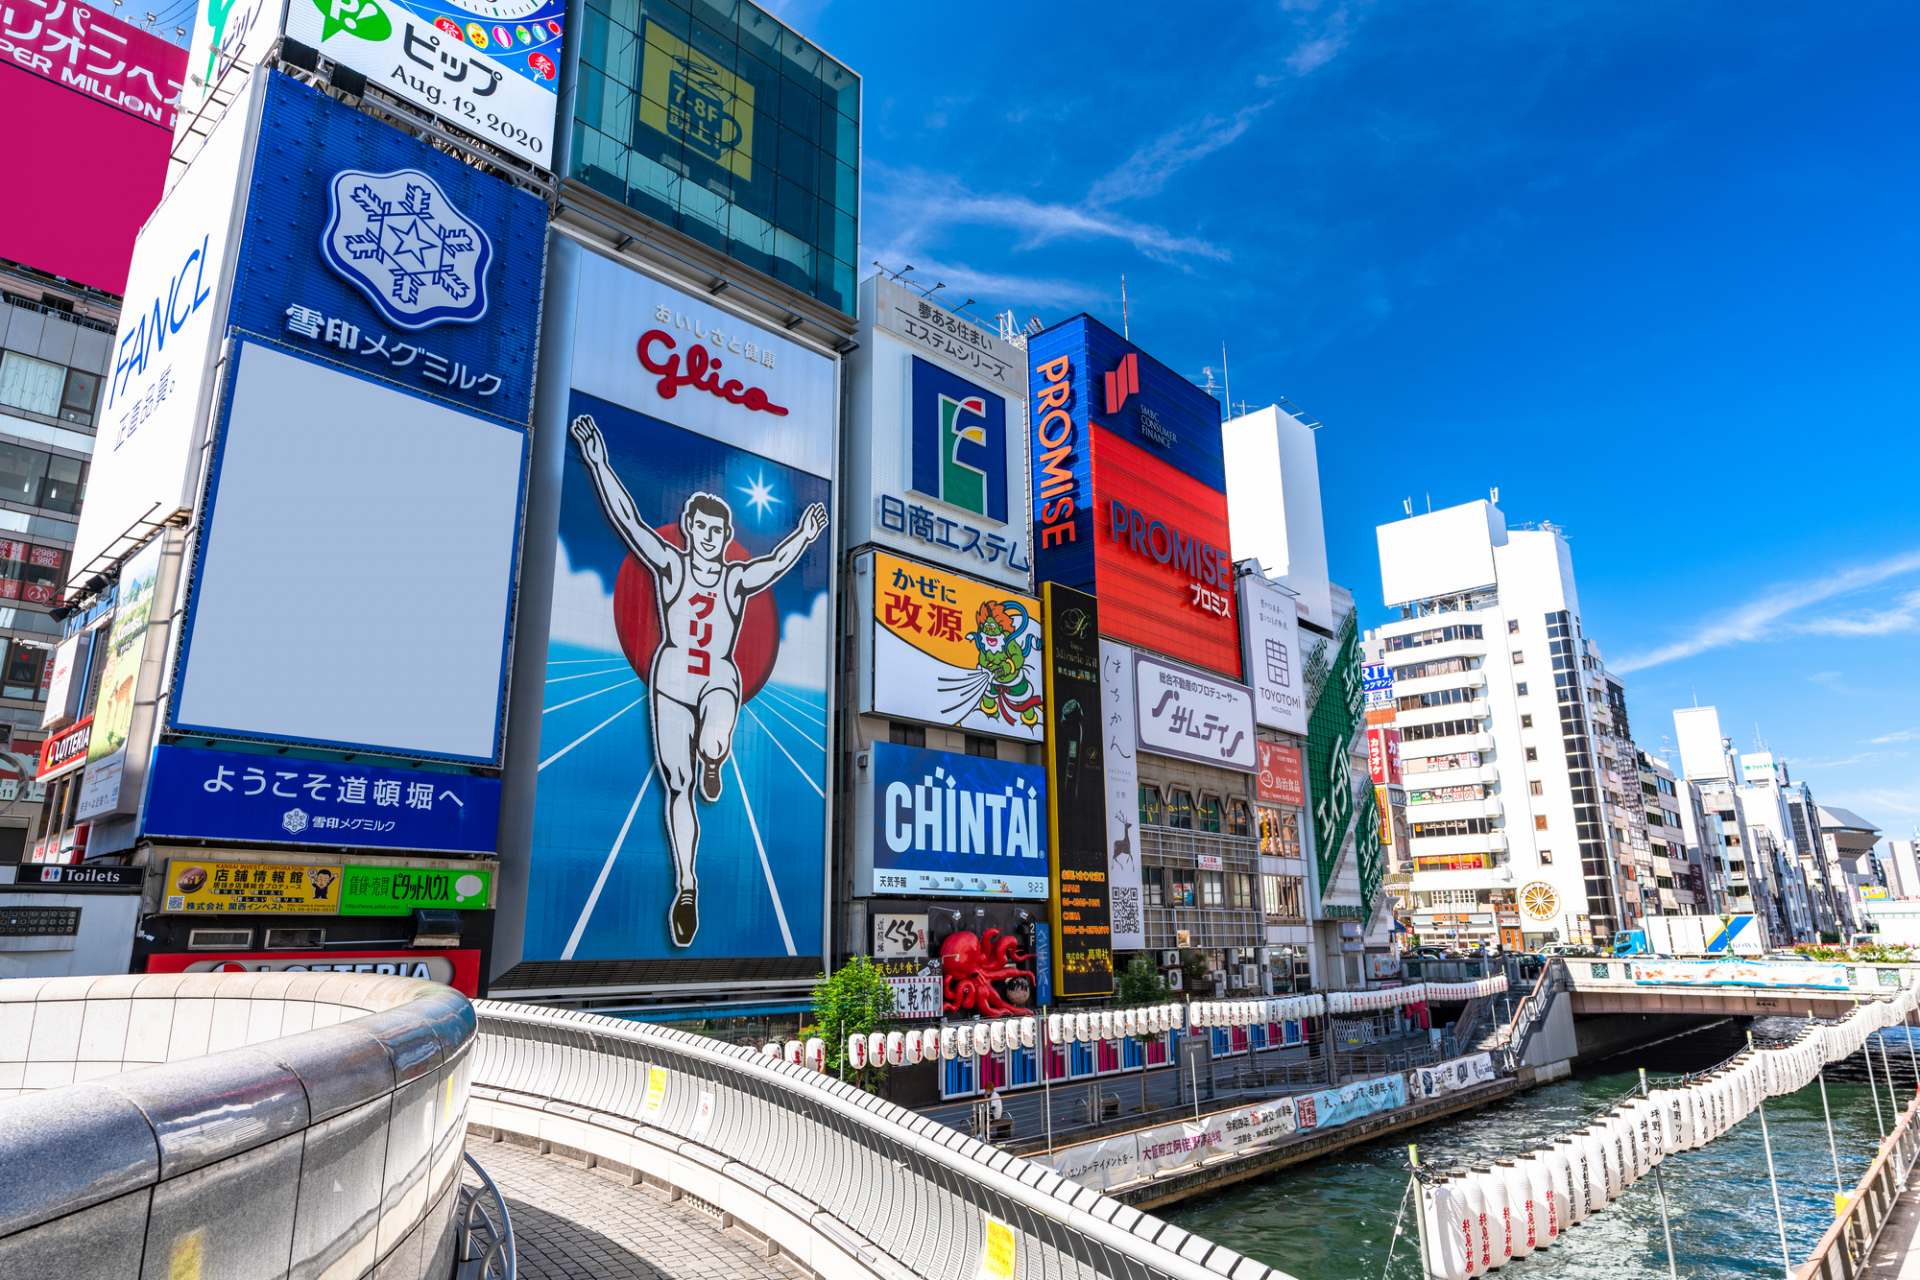 大阪の文化が凝縮されたエリア・難波で人気の観光スポット18選 | GOOD LUCK TRIP